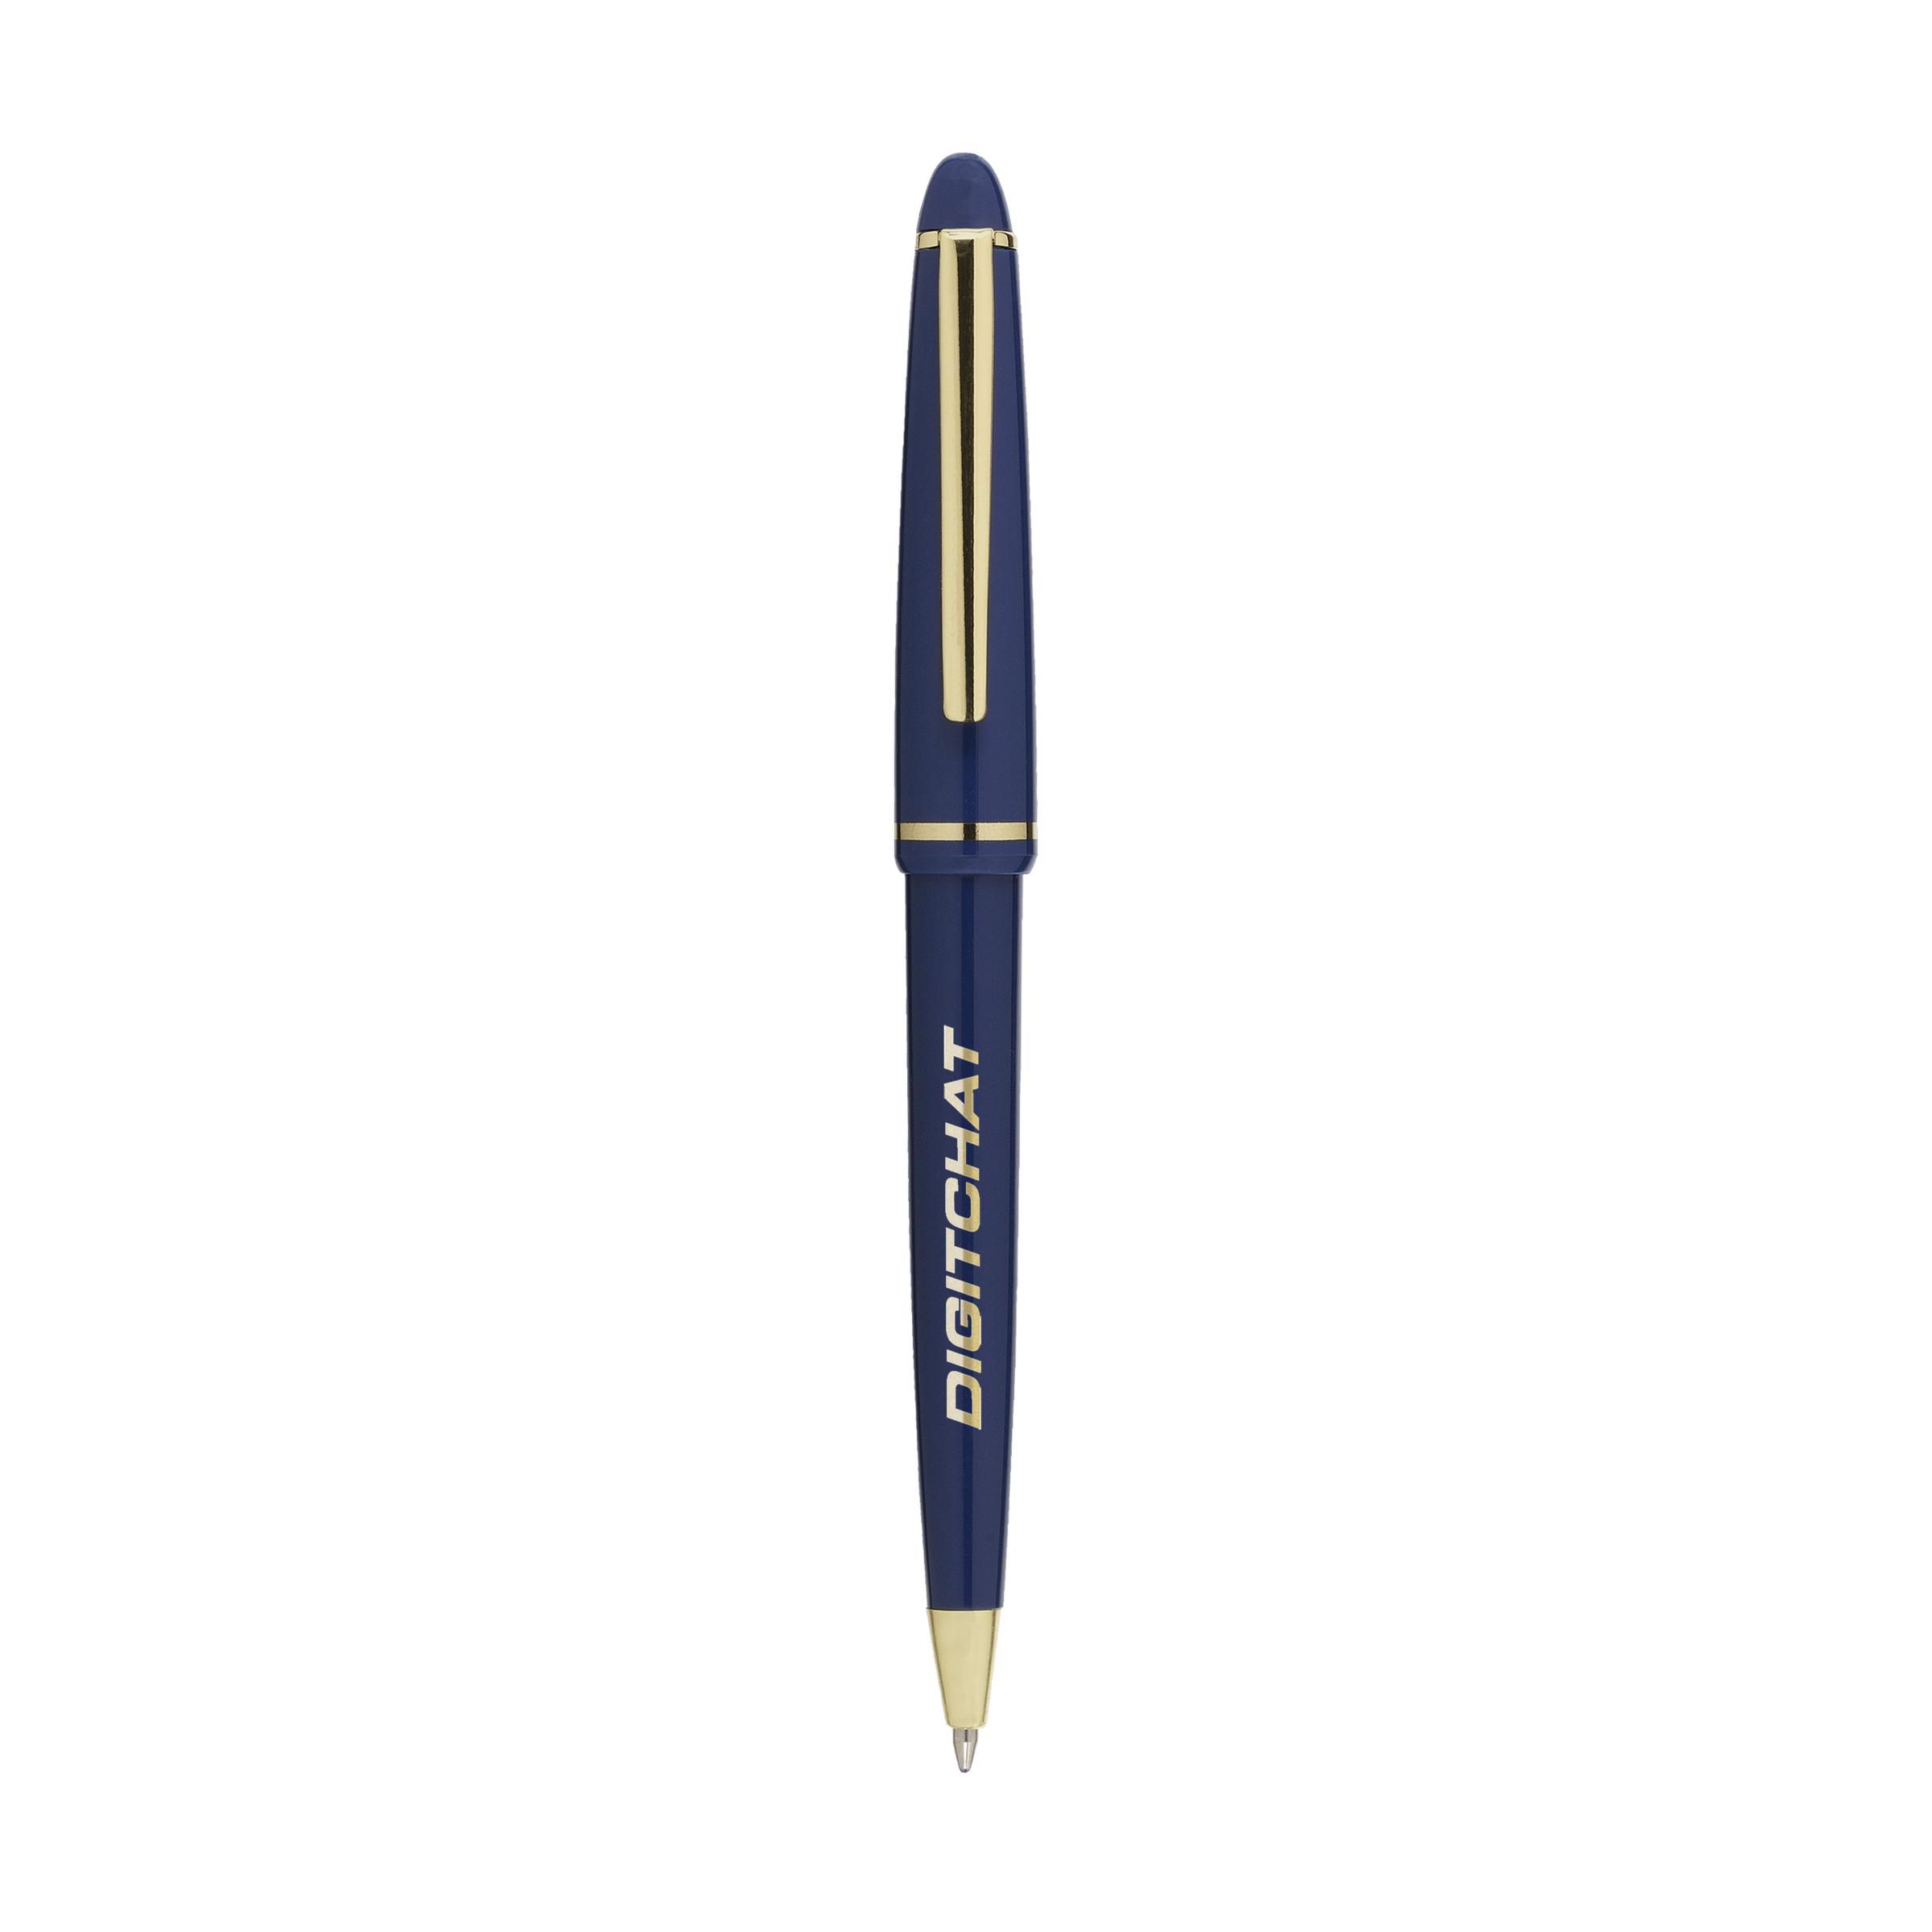 A blue ink ballpoint pen from Okehampton - Rowley Regis